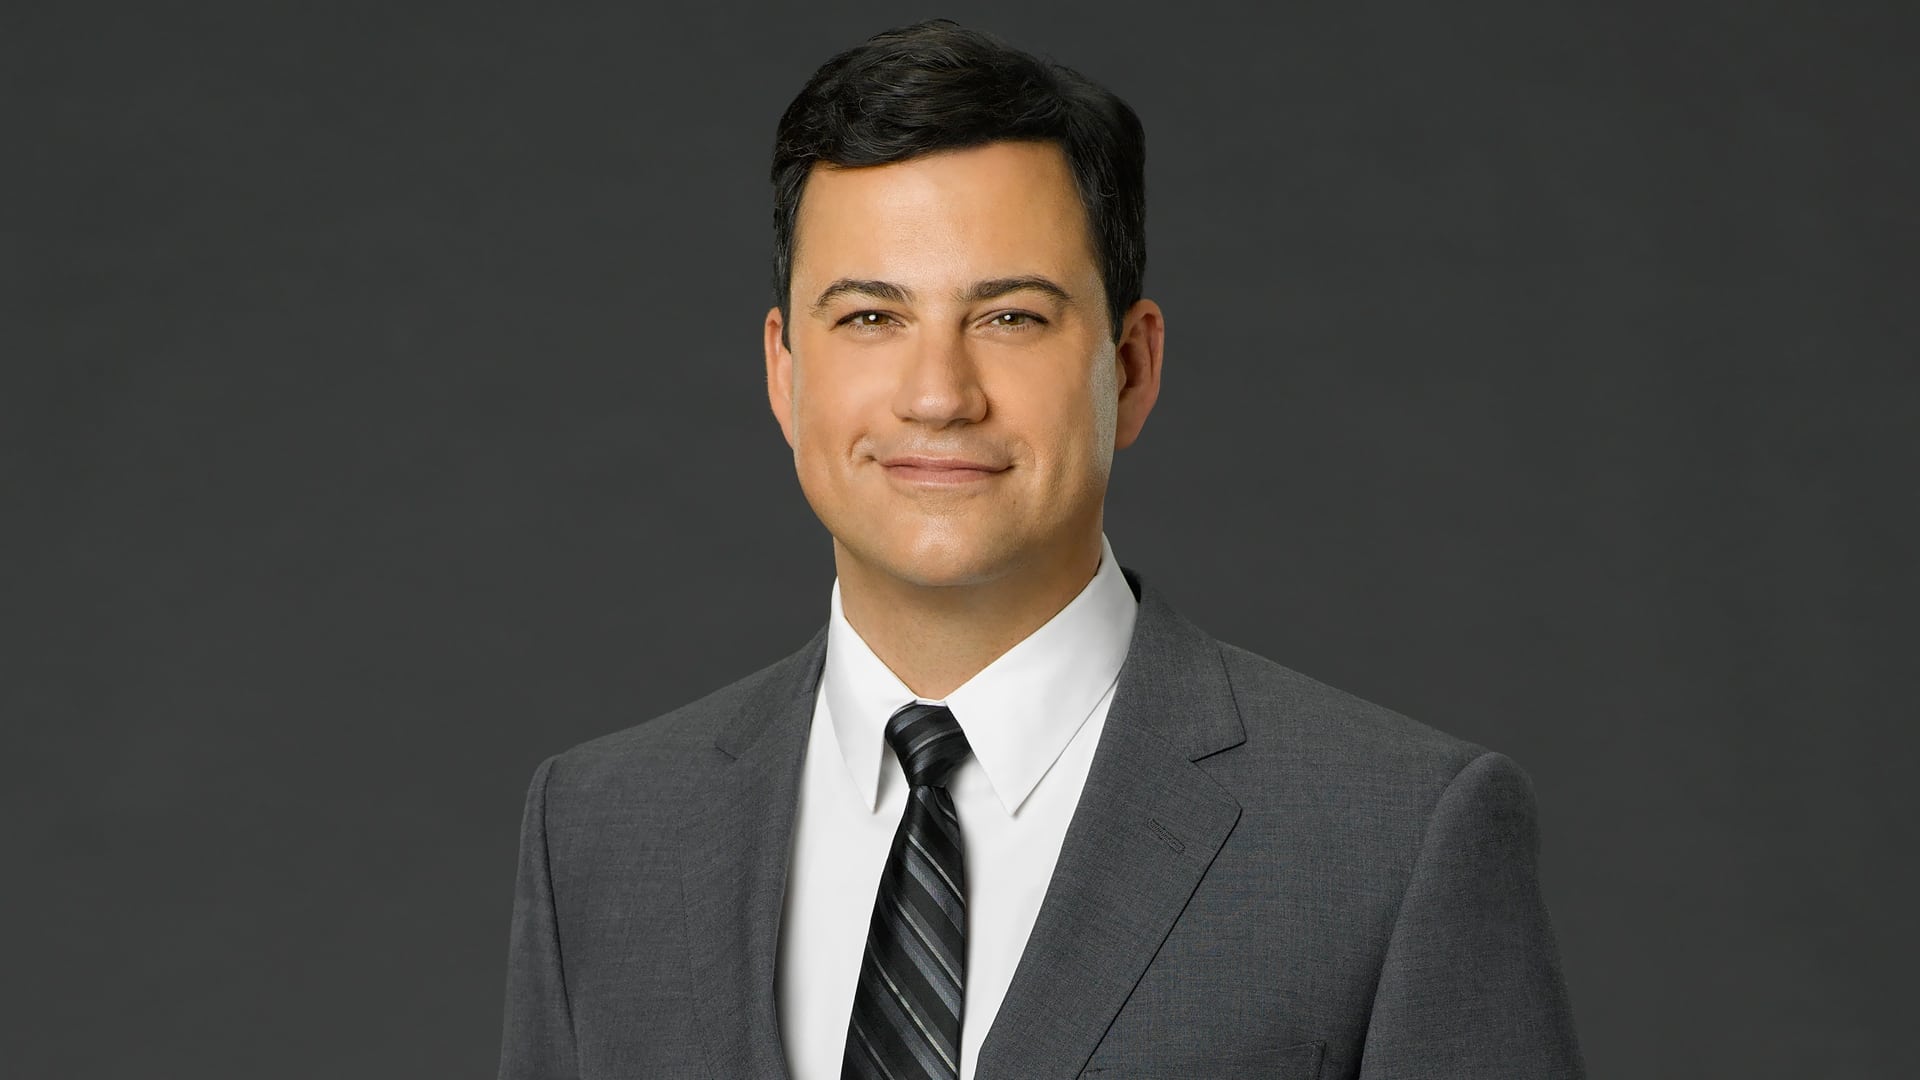 Jimmy Kimmel Live! - Season 22 Episode 45